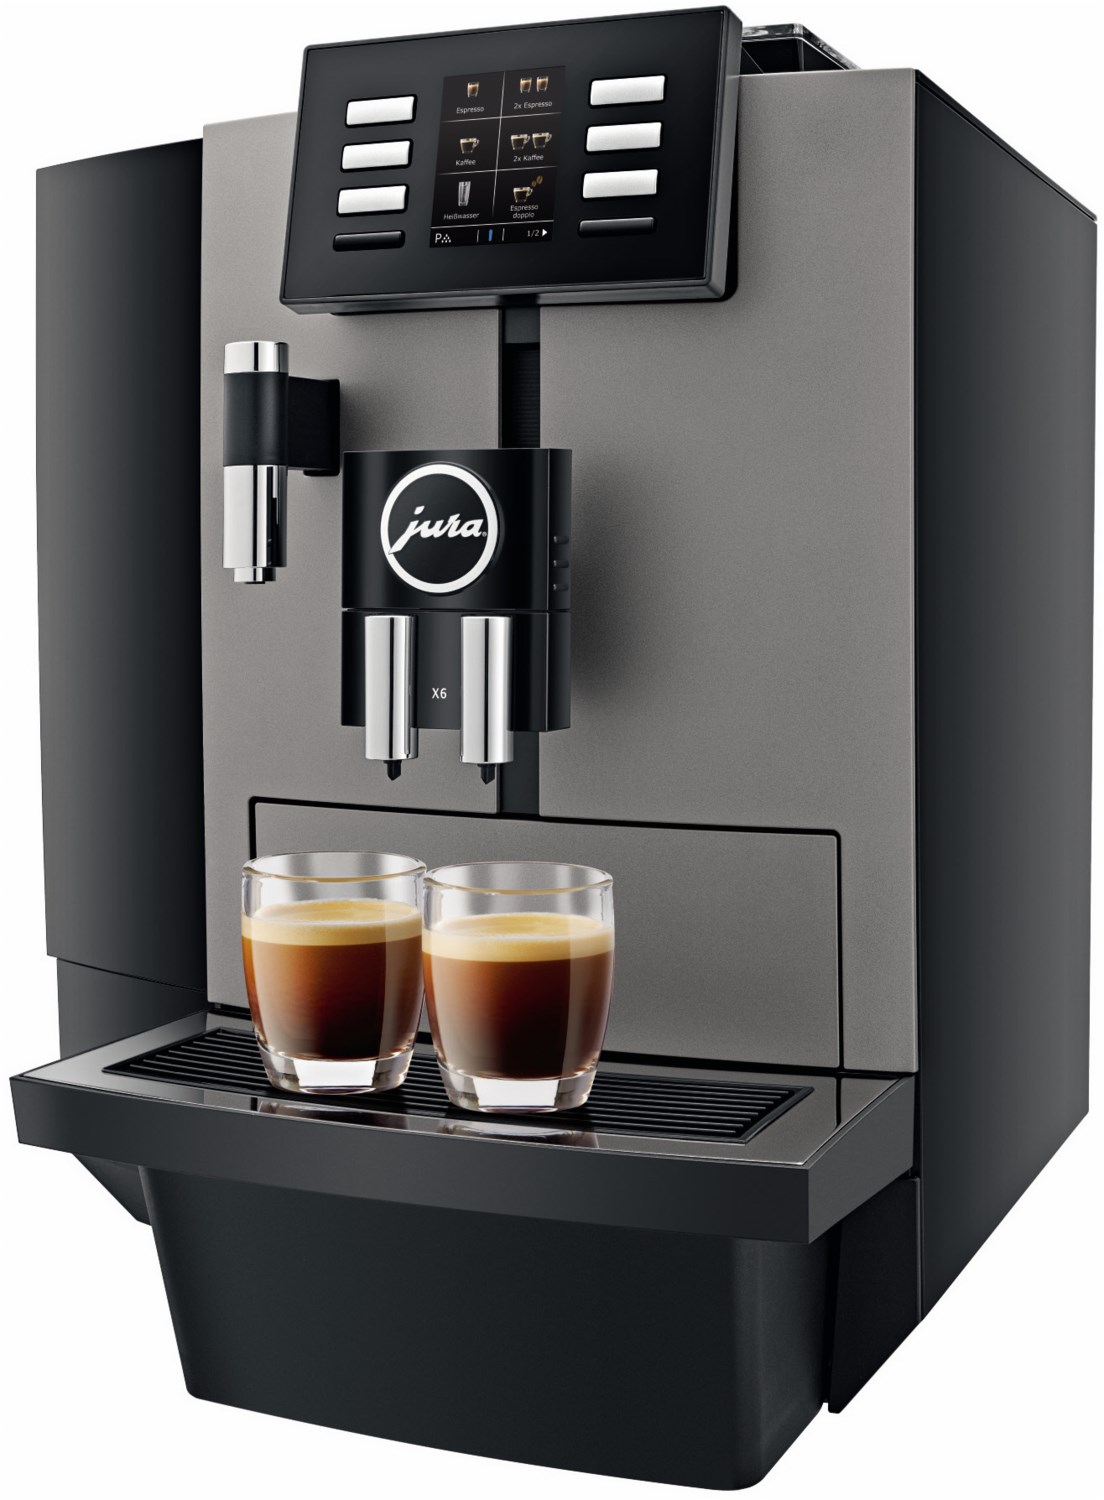 X6 Professional Kaffee-Vollautomat dark inox